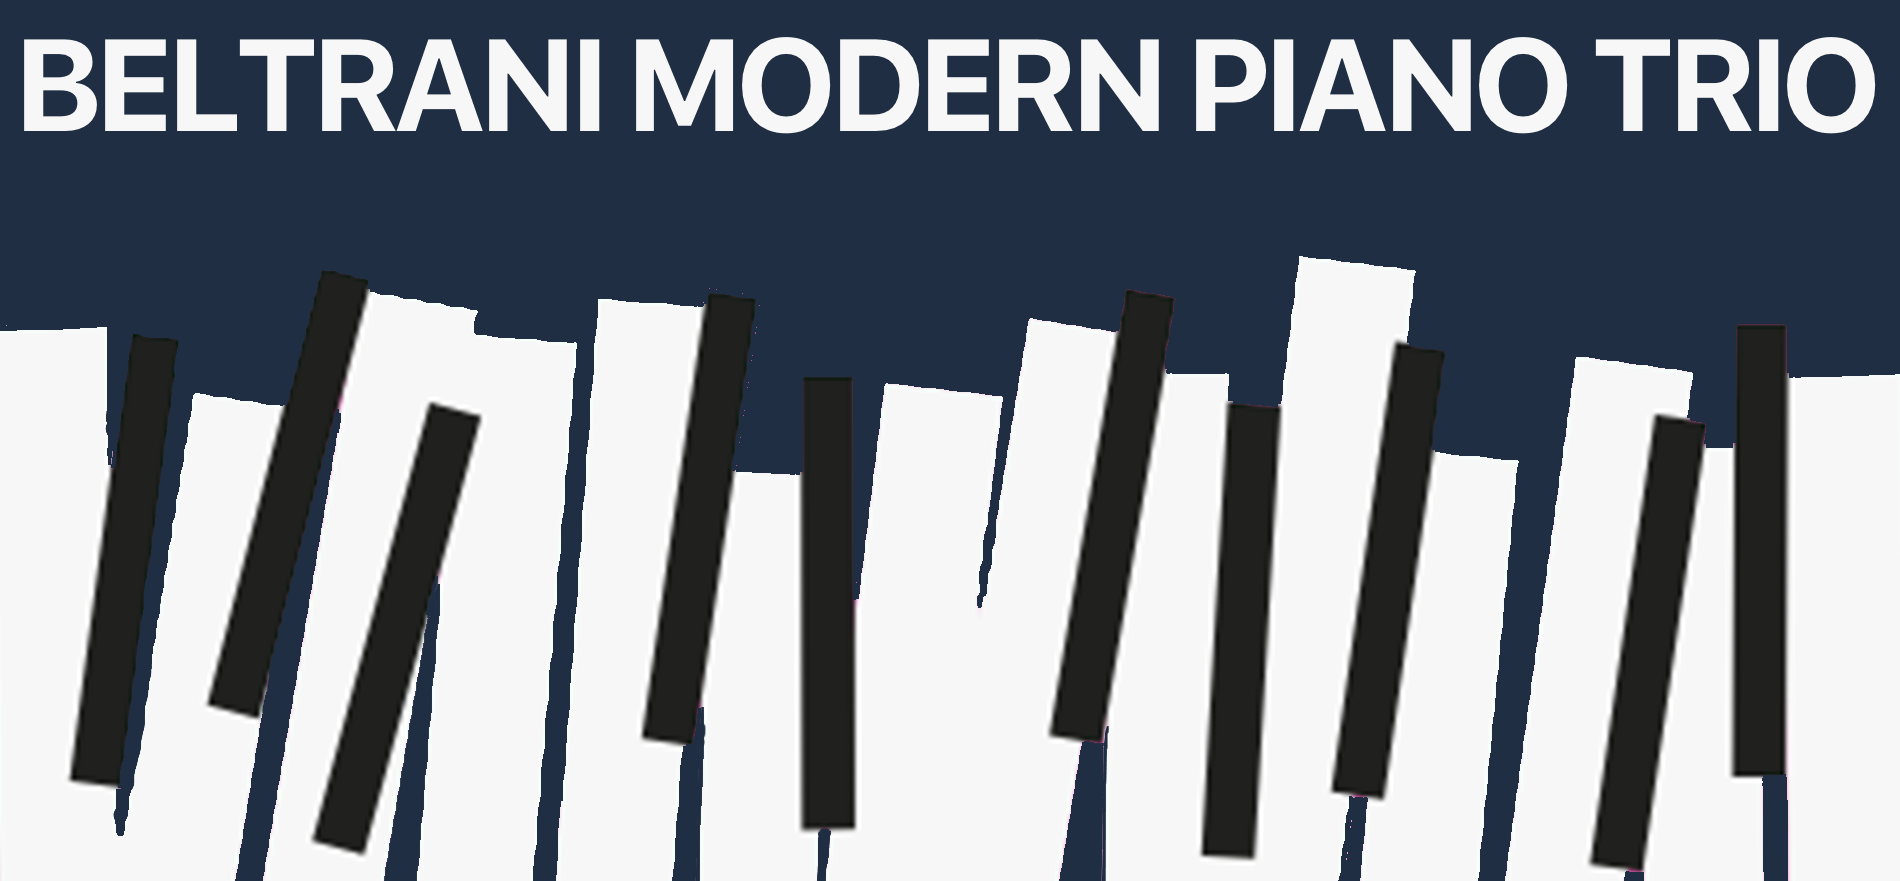 Beltrani Modern Piano Trio